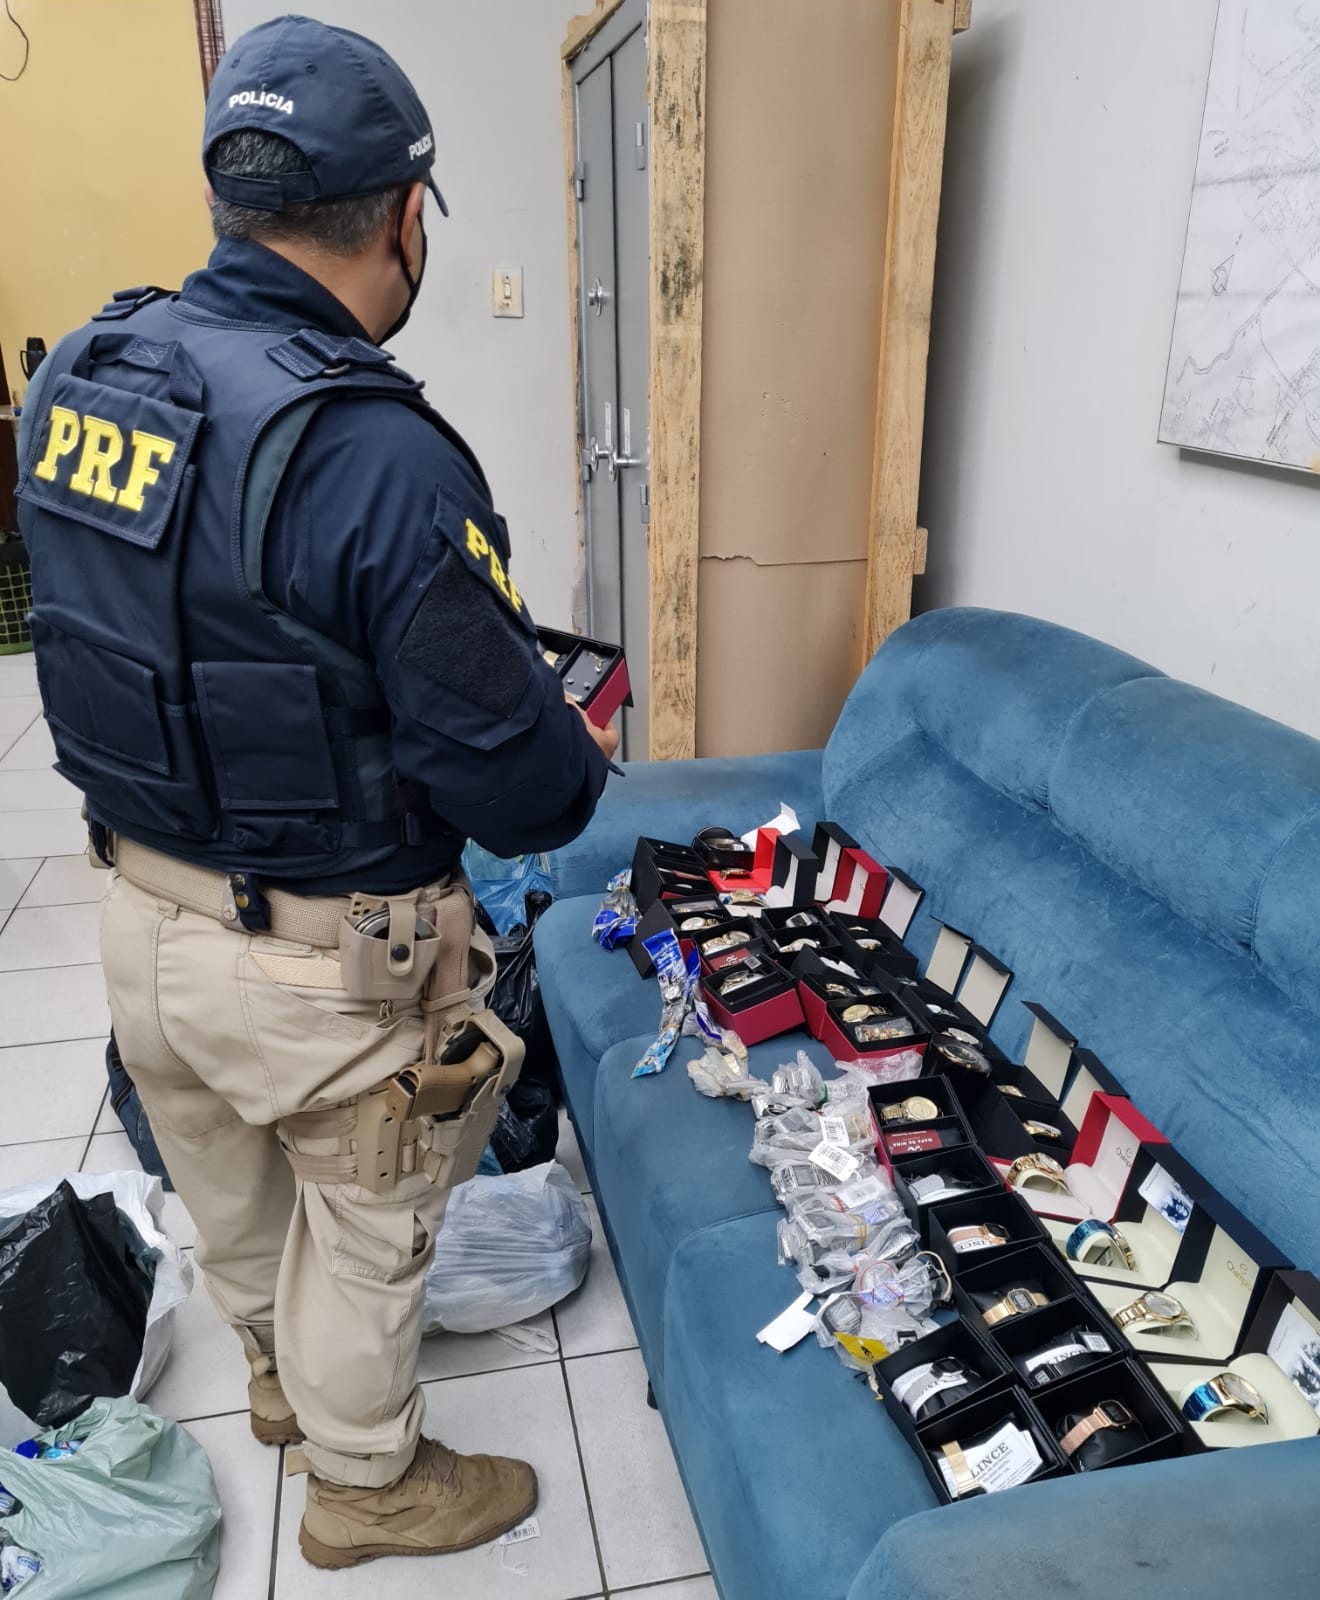 Homens são presos transportando mercadoria sem nota fiscal na BR-316, em Caxias